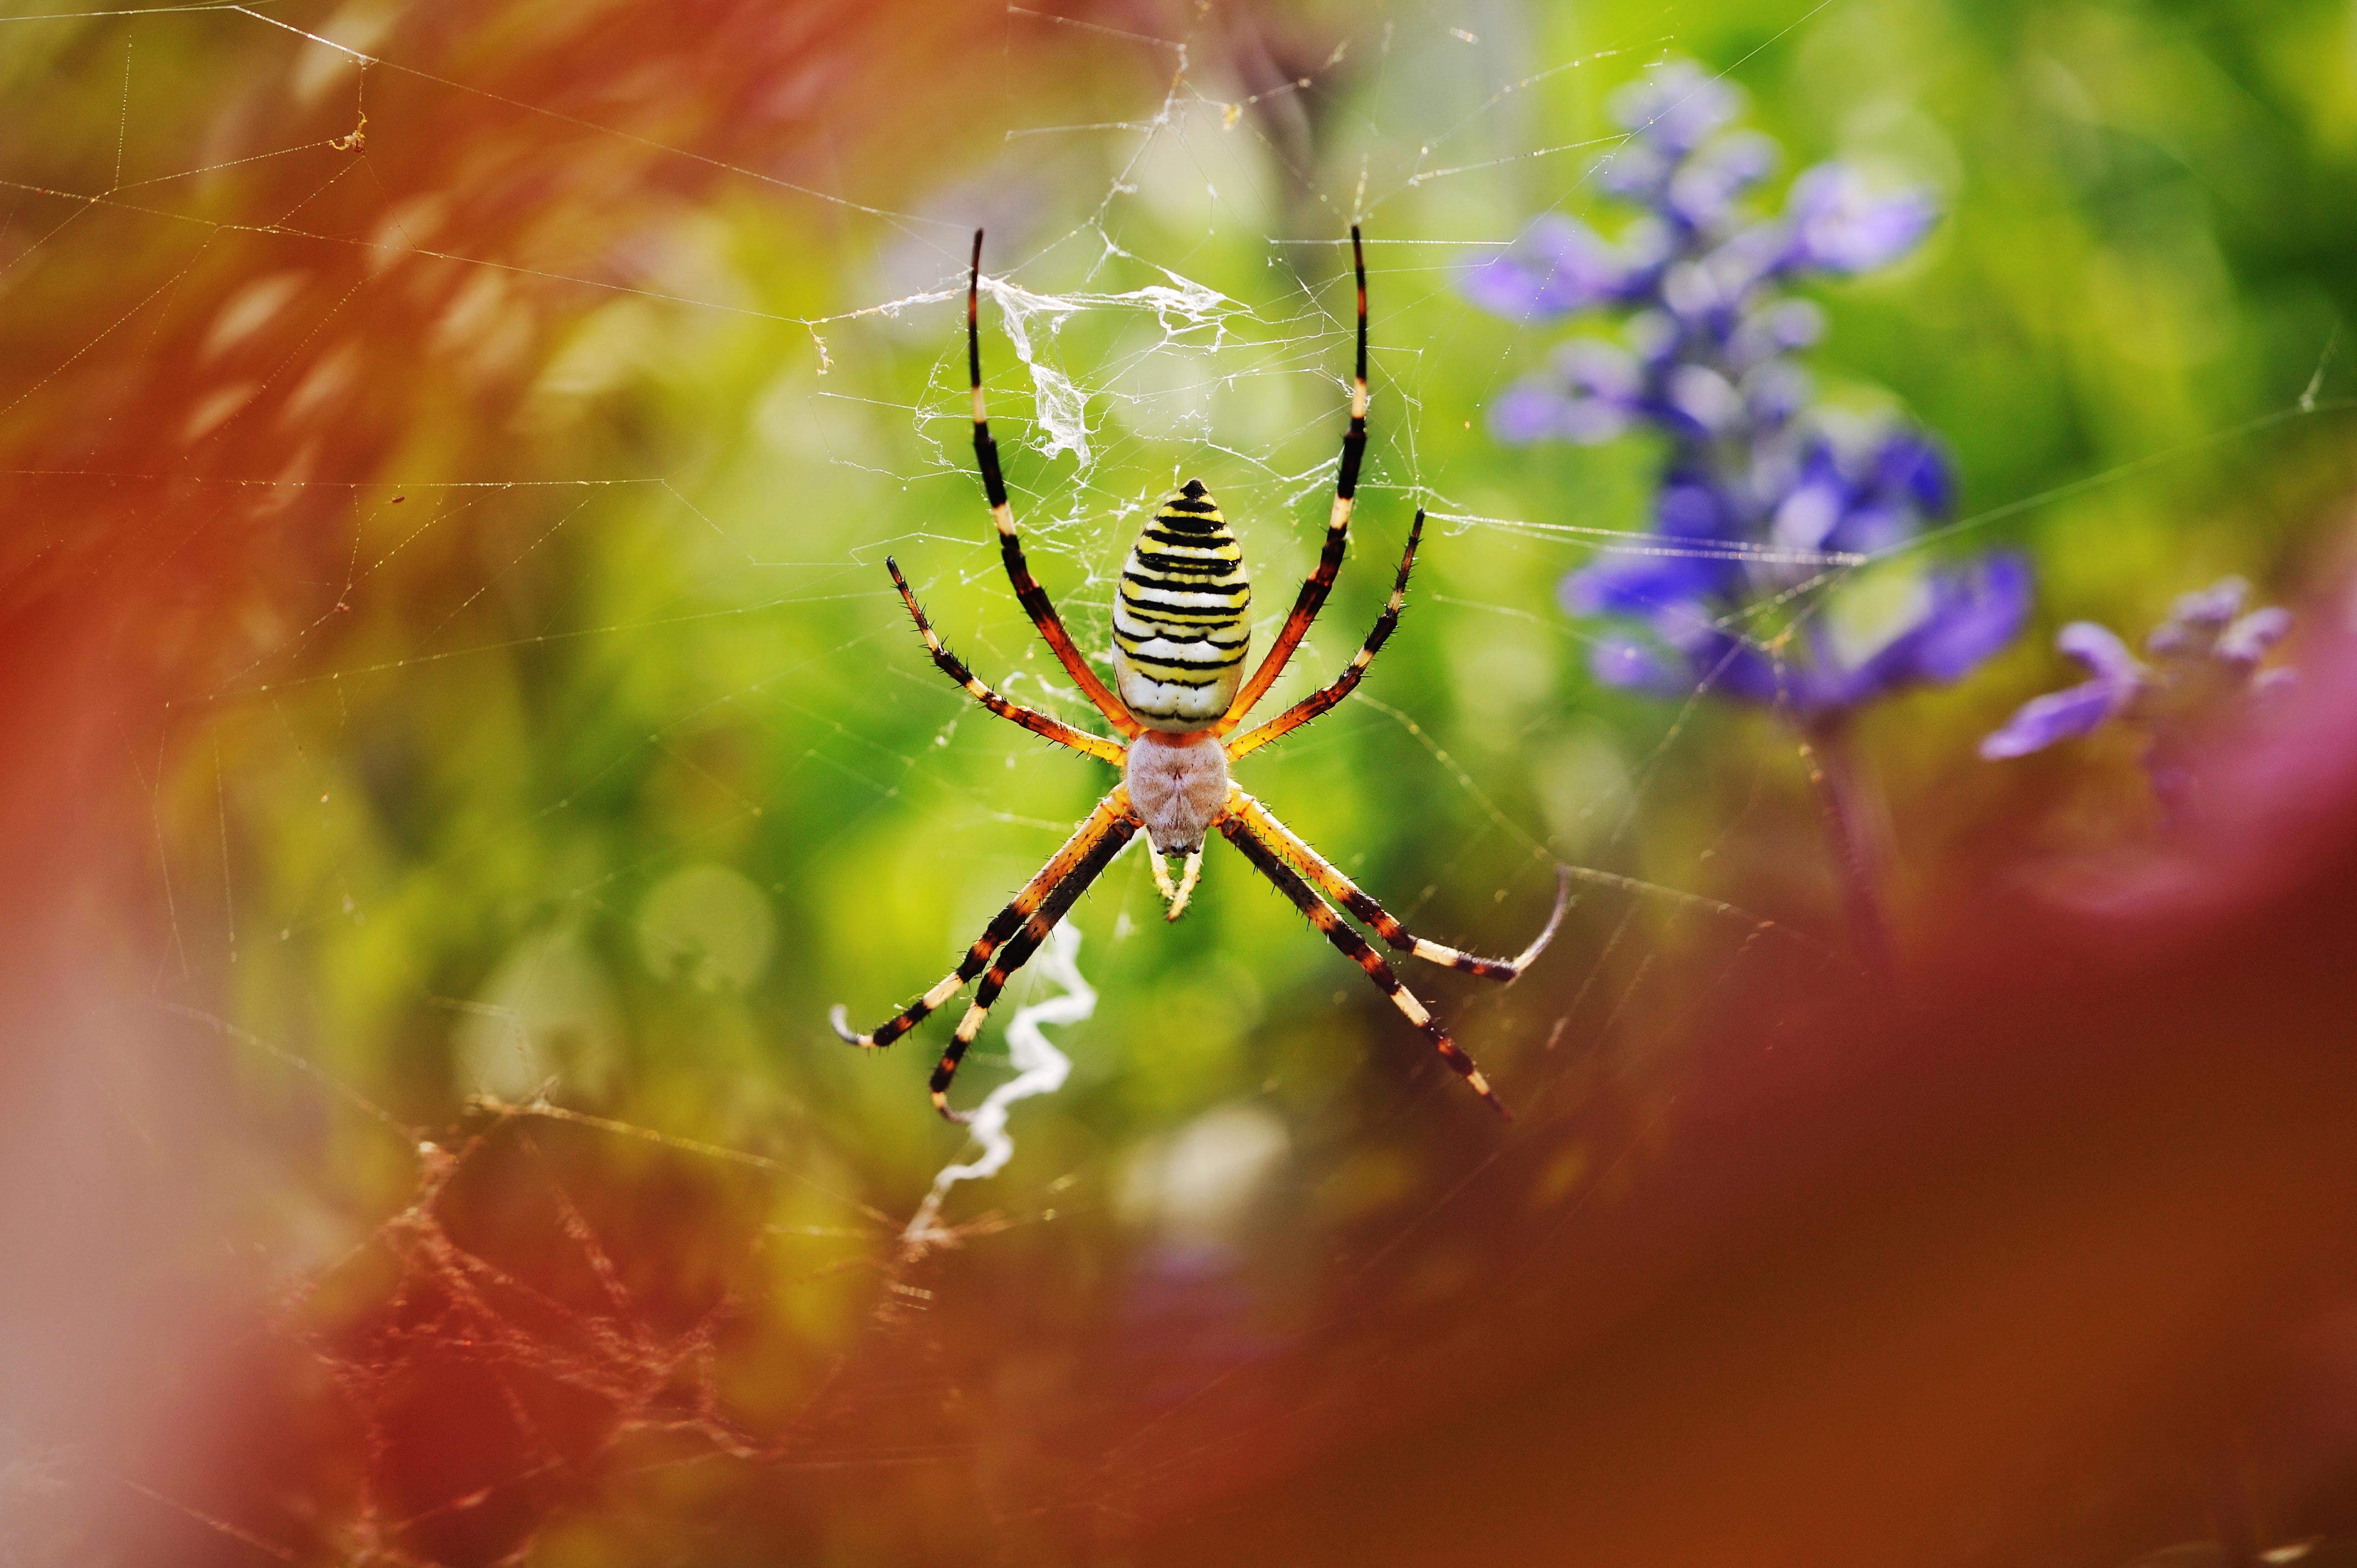 ナガコガネグモ 虫の写真と生態なら昆虫写真図鑑 ムシミル